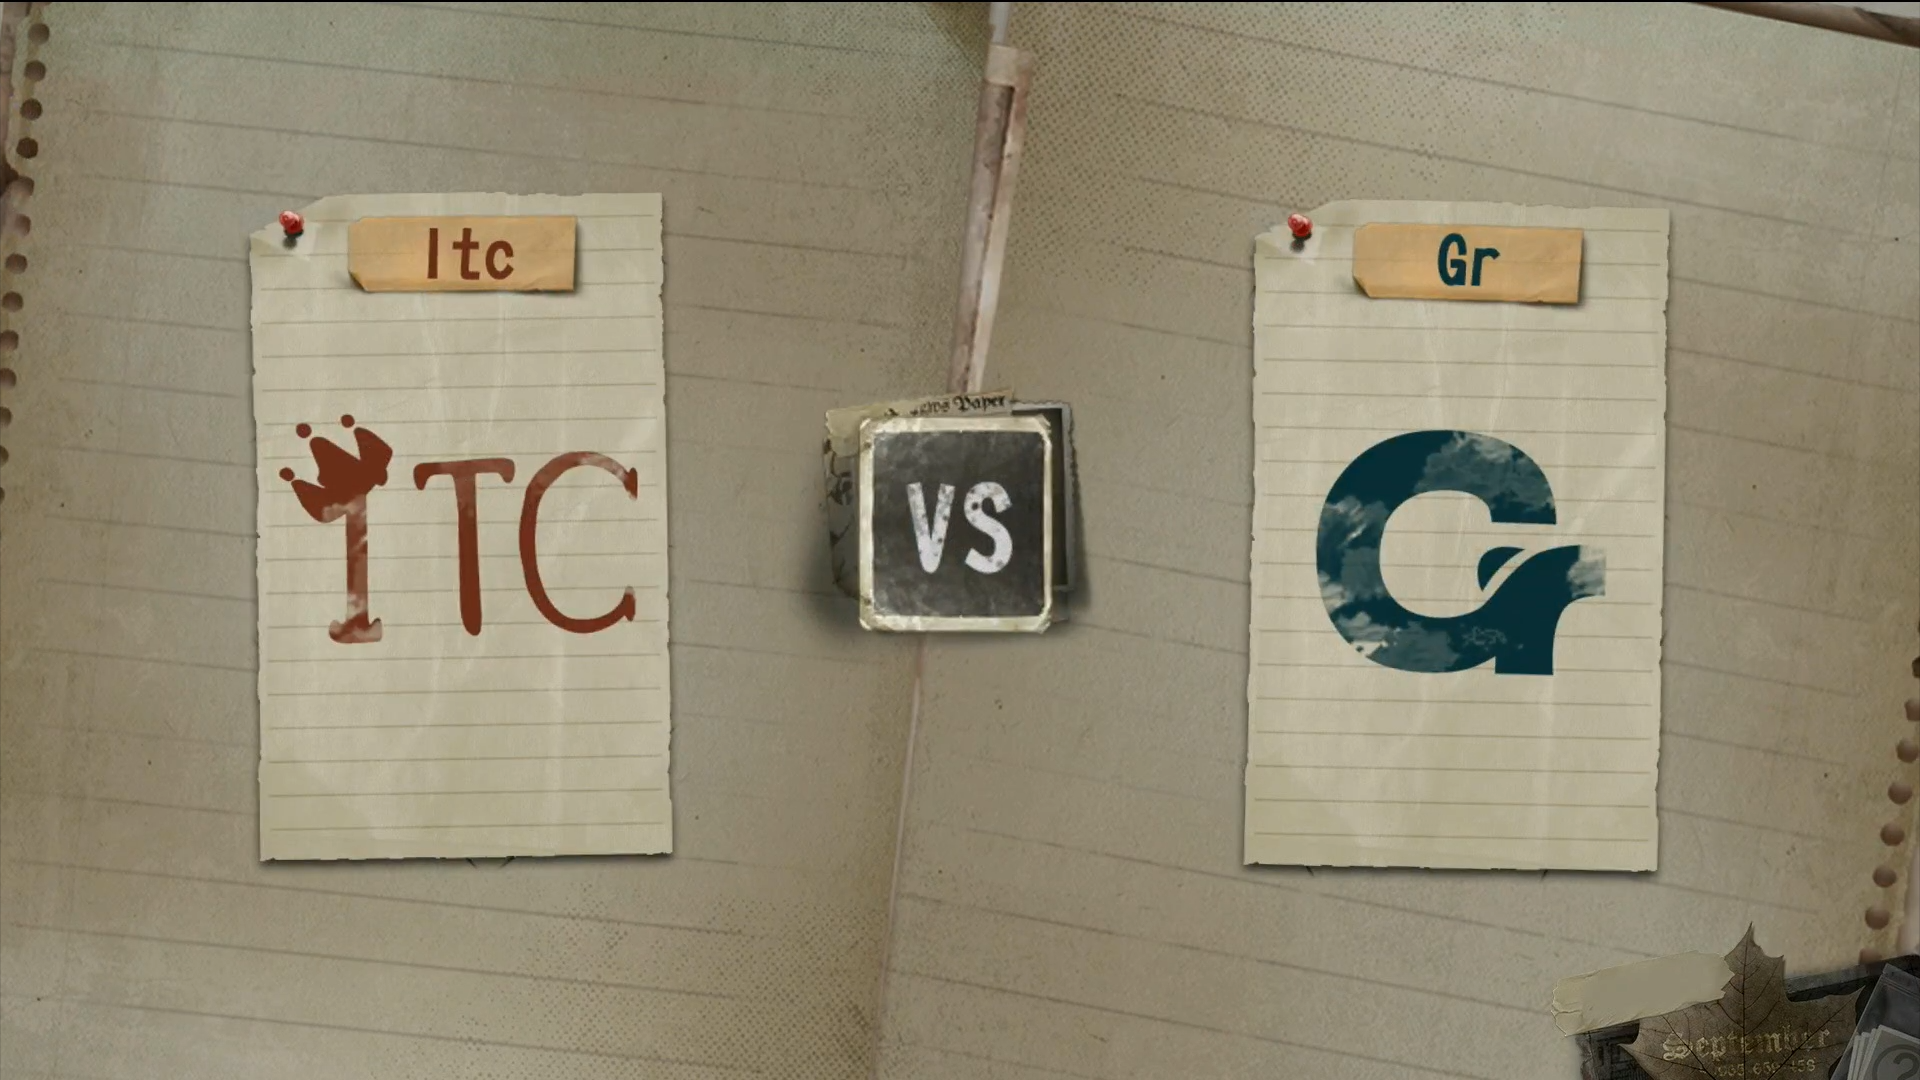 8月24日 总决赛 Itc VS Gr